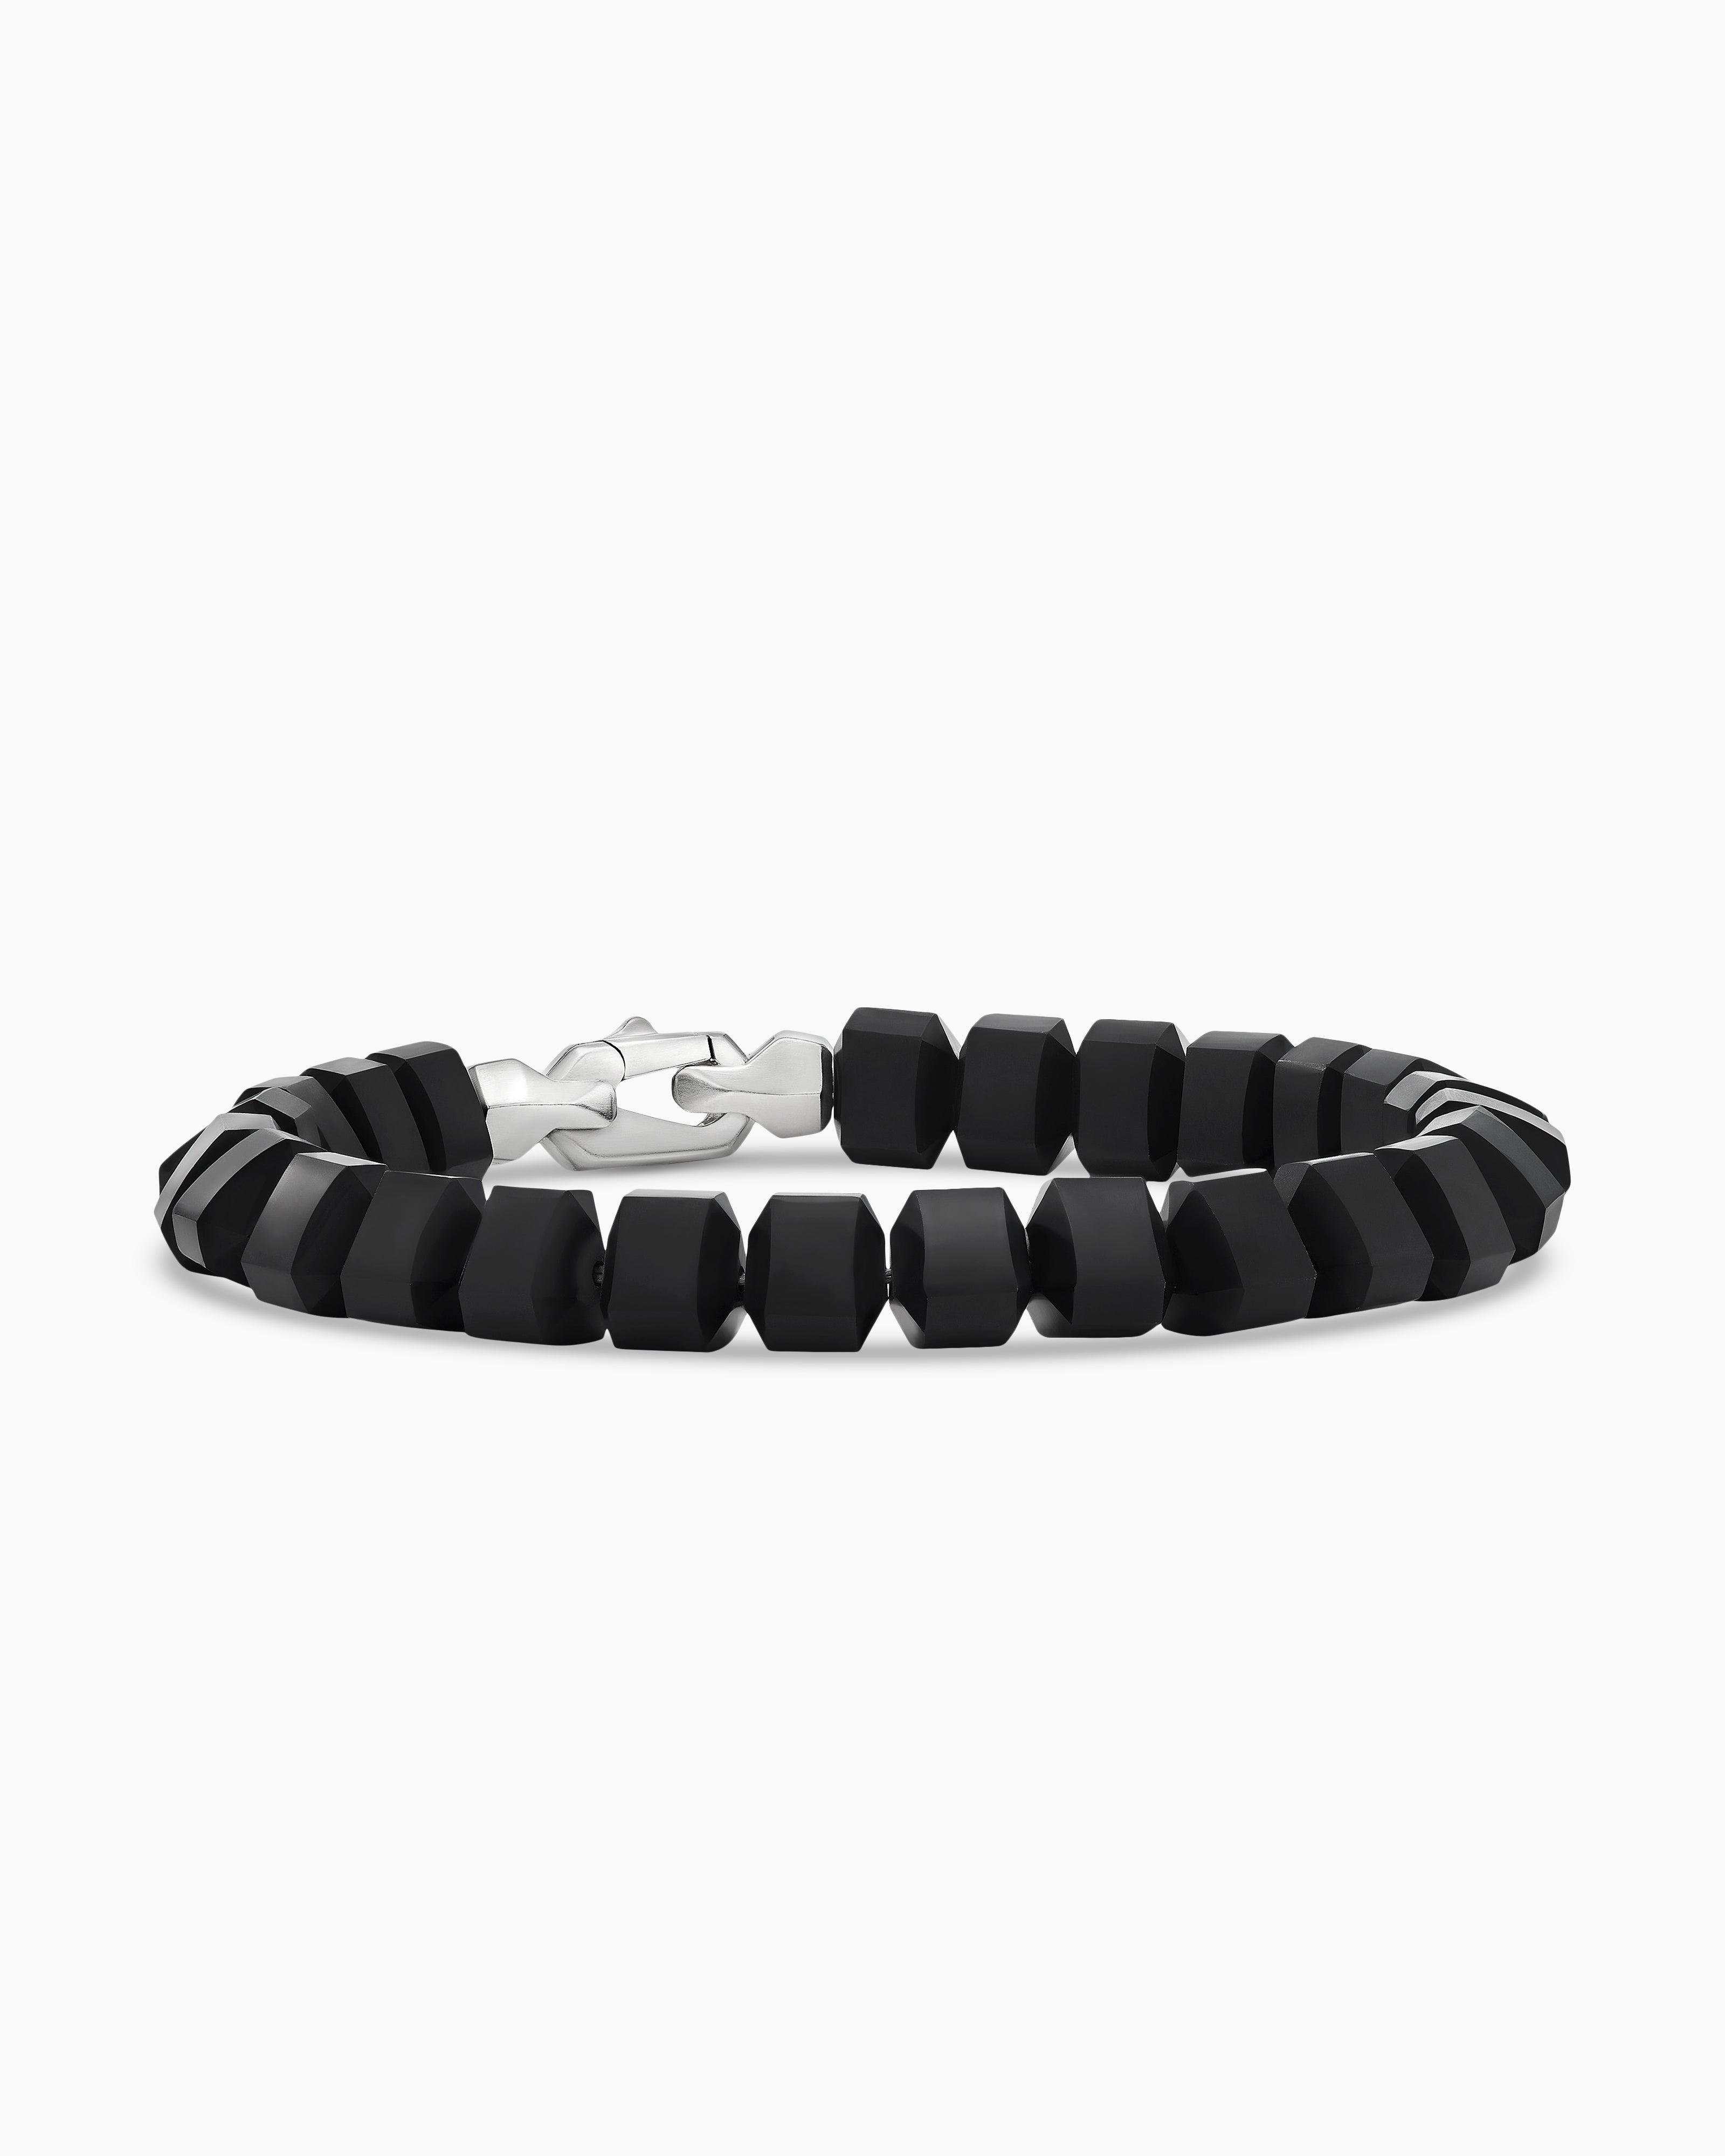 31 Unique Silver Bracelets for Men